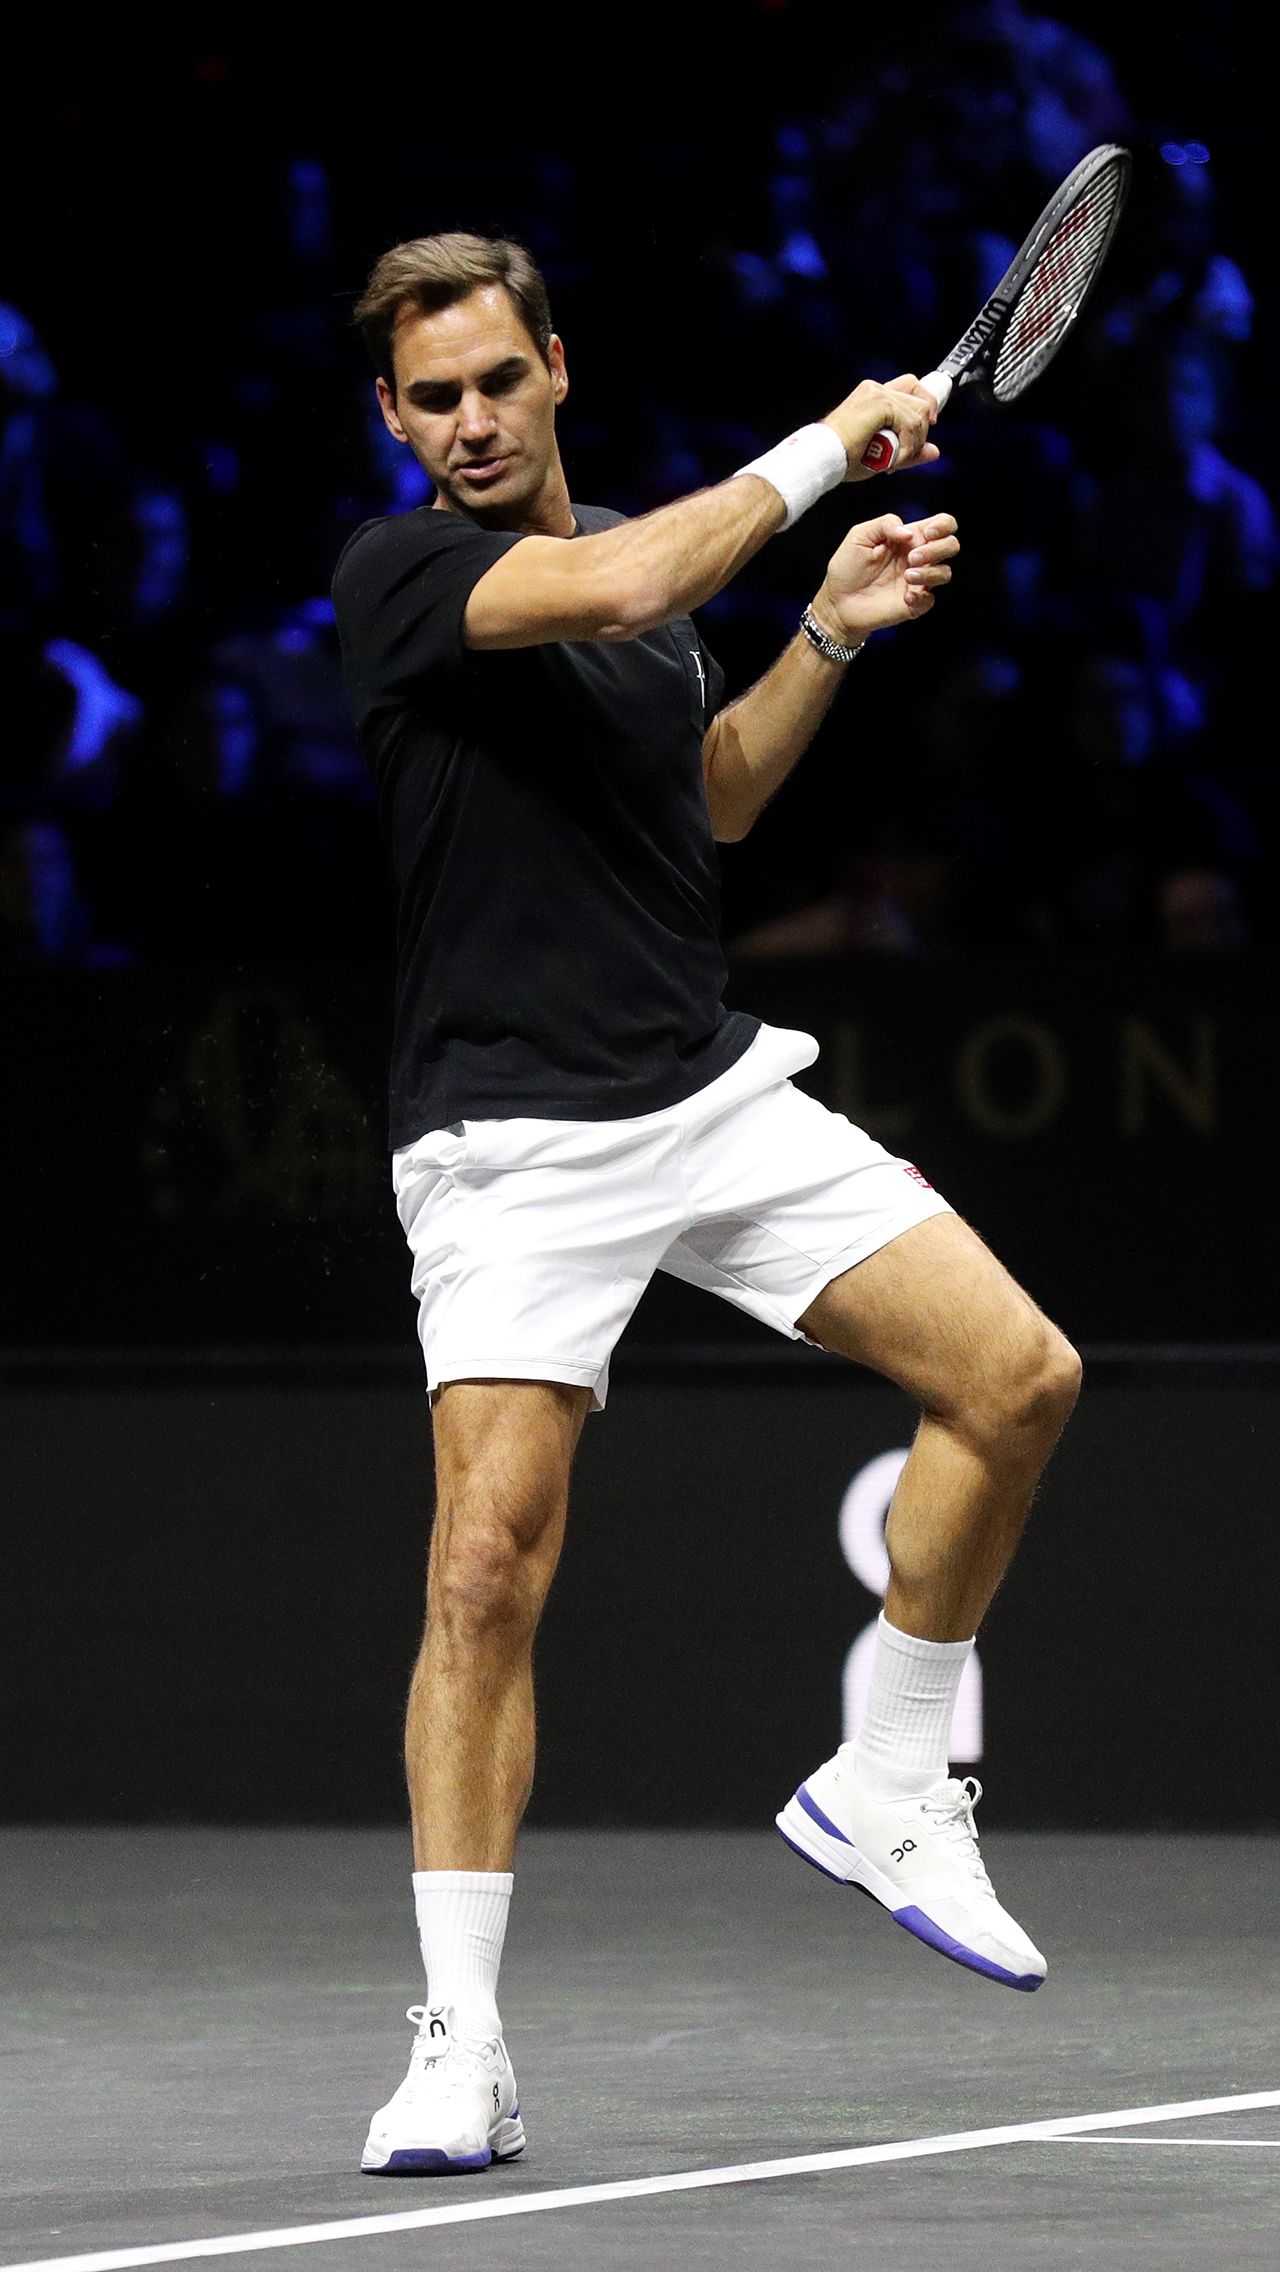 Солнечный день в Лондоне предзнаменовал великий финал. Роджер Федерер готовился к матчу с Джеком Соком и Фрэнсисом Тиафо вместе с Рафаэлем Надалем.